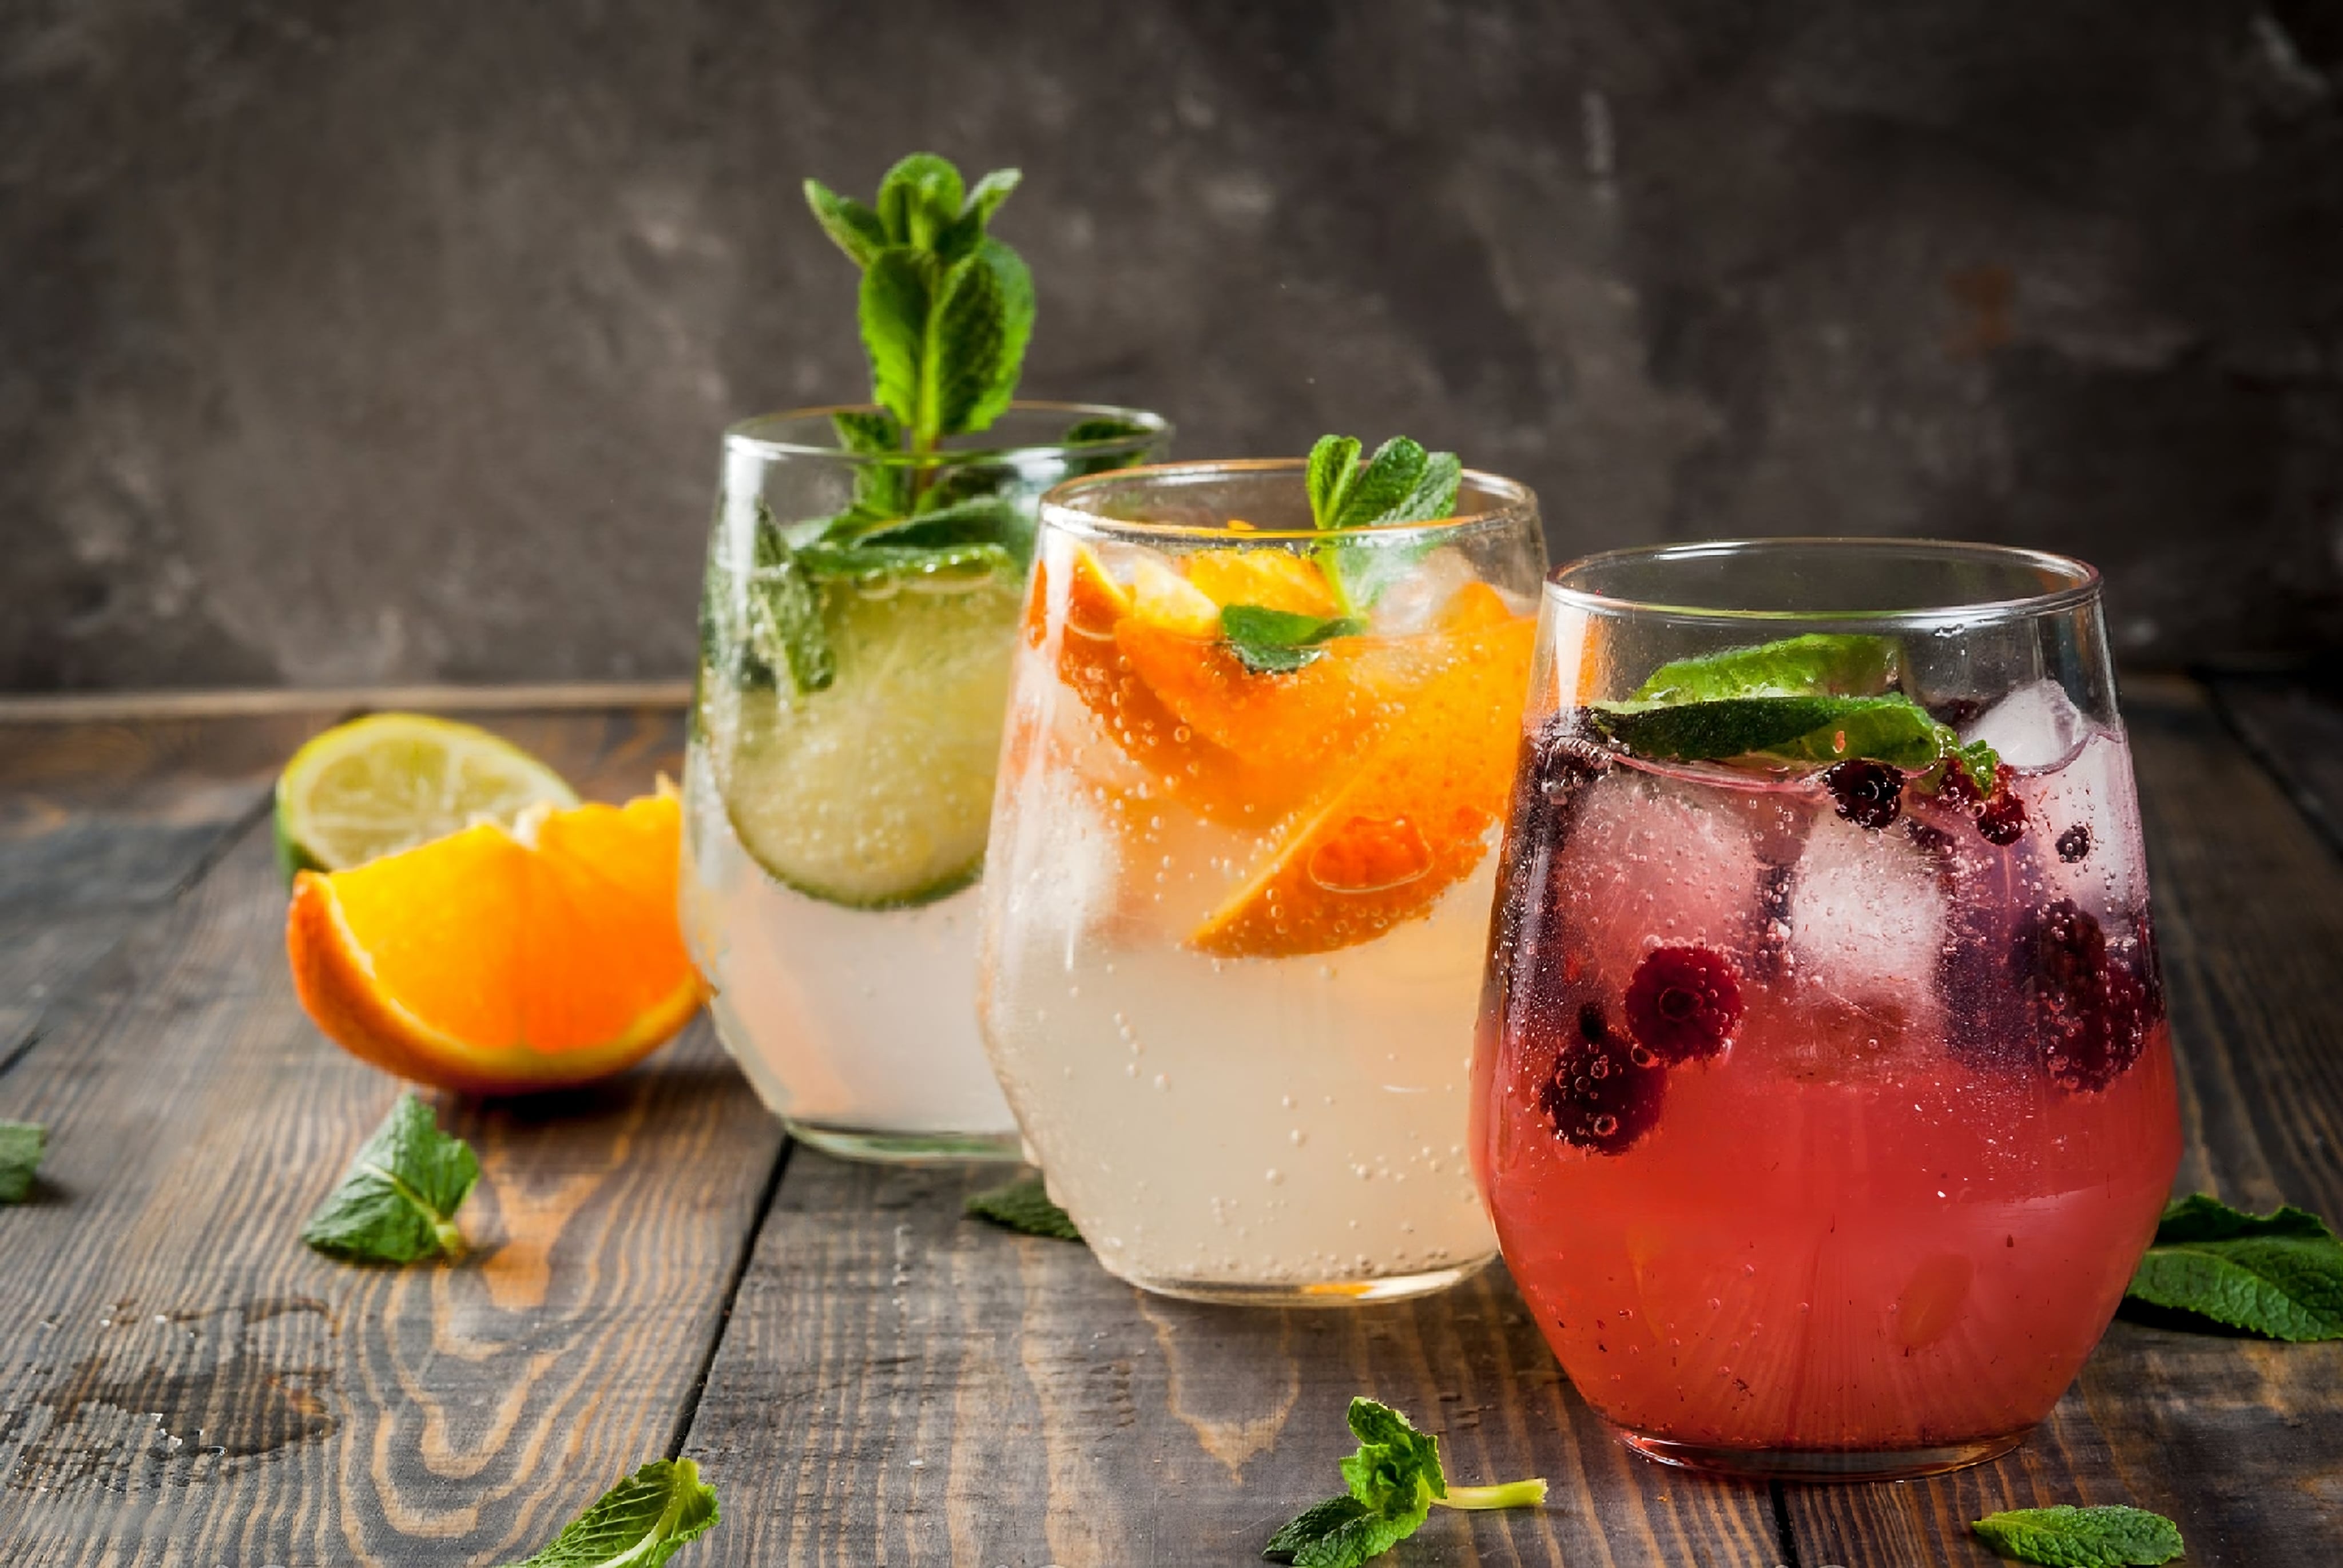 Mocktails/drinks to make using Storia fruit juices